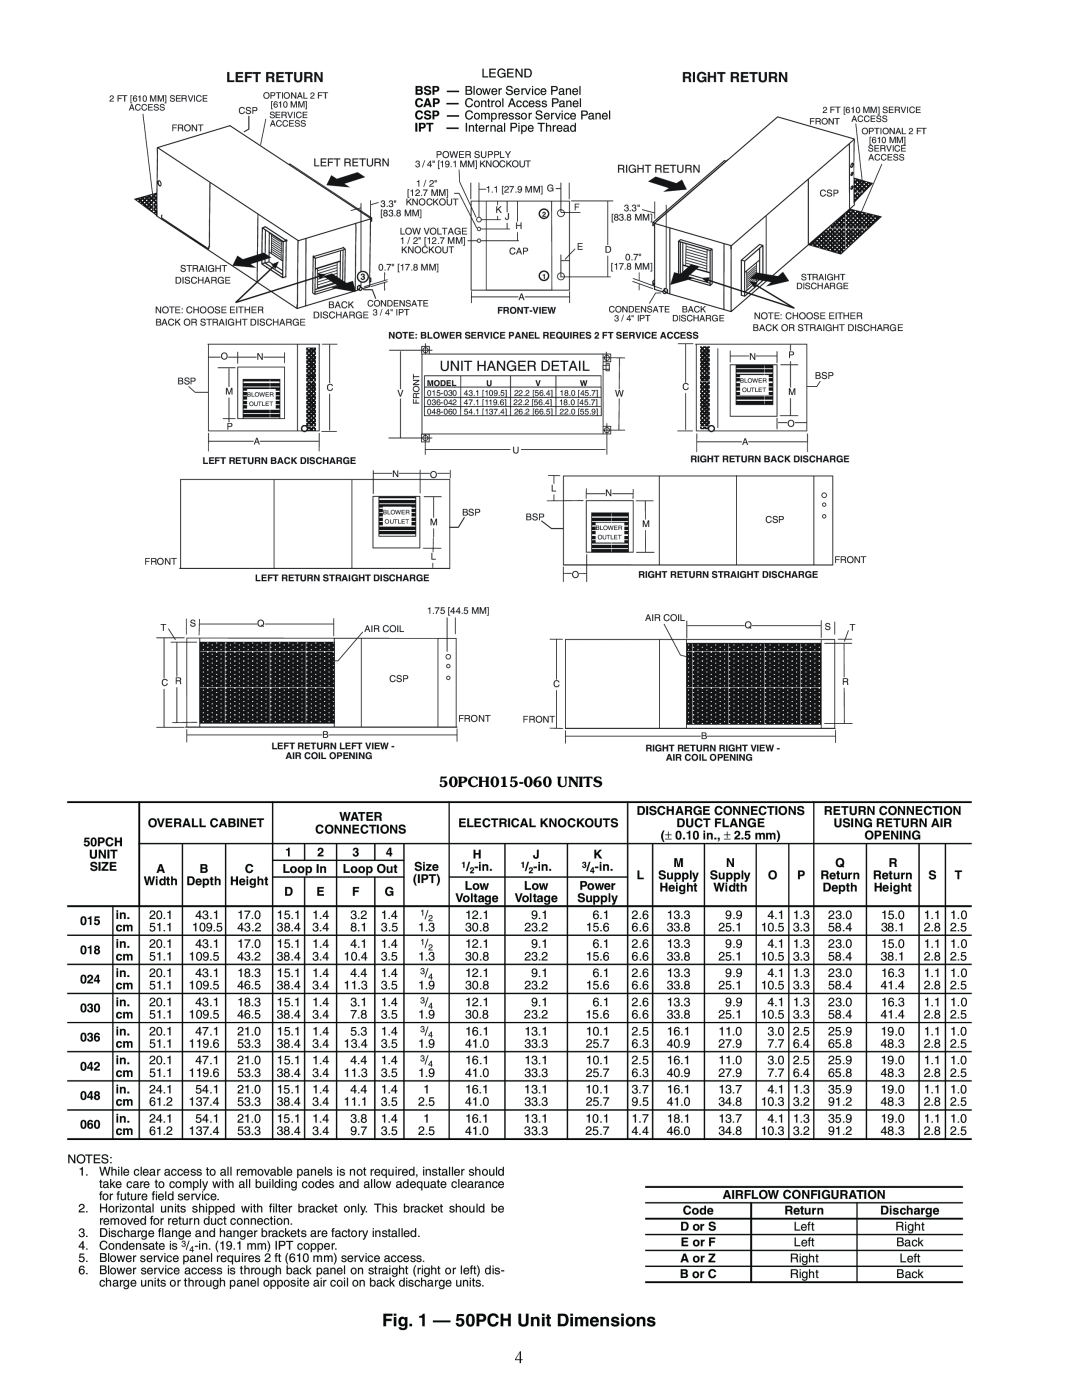 Carrier PCV015-060 8412, 50PCH Unit Dimensions, Left Return, Right Return, Unit Hanger Detail, 50PCH015-060UNITS 